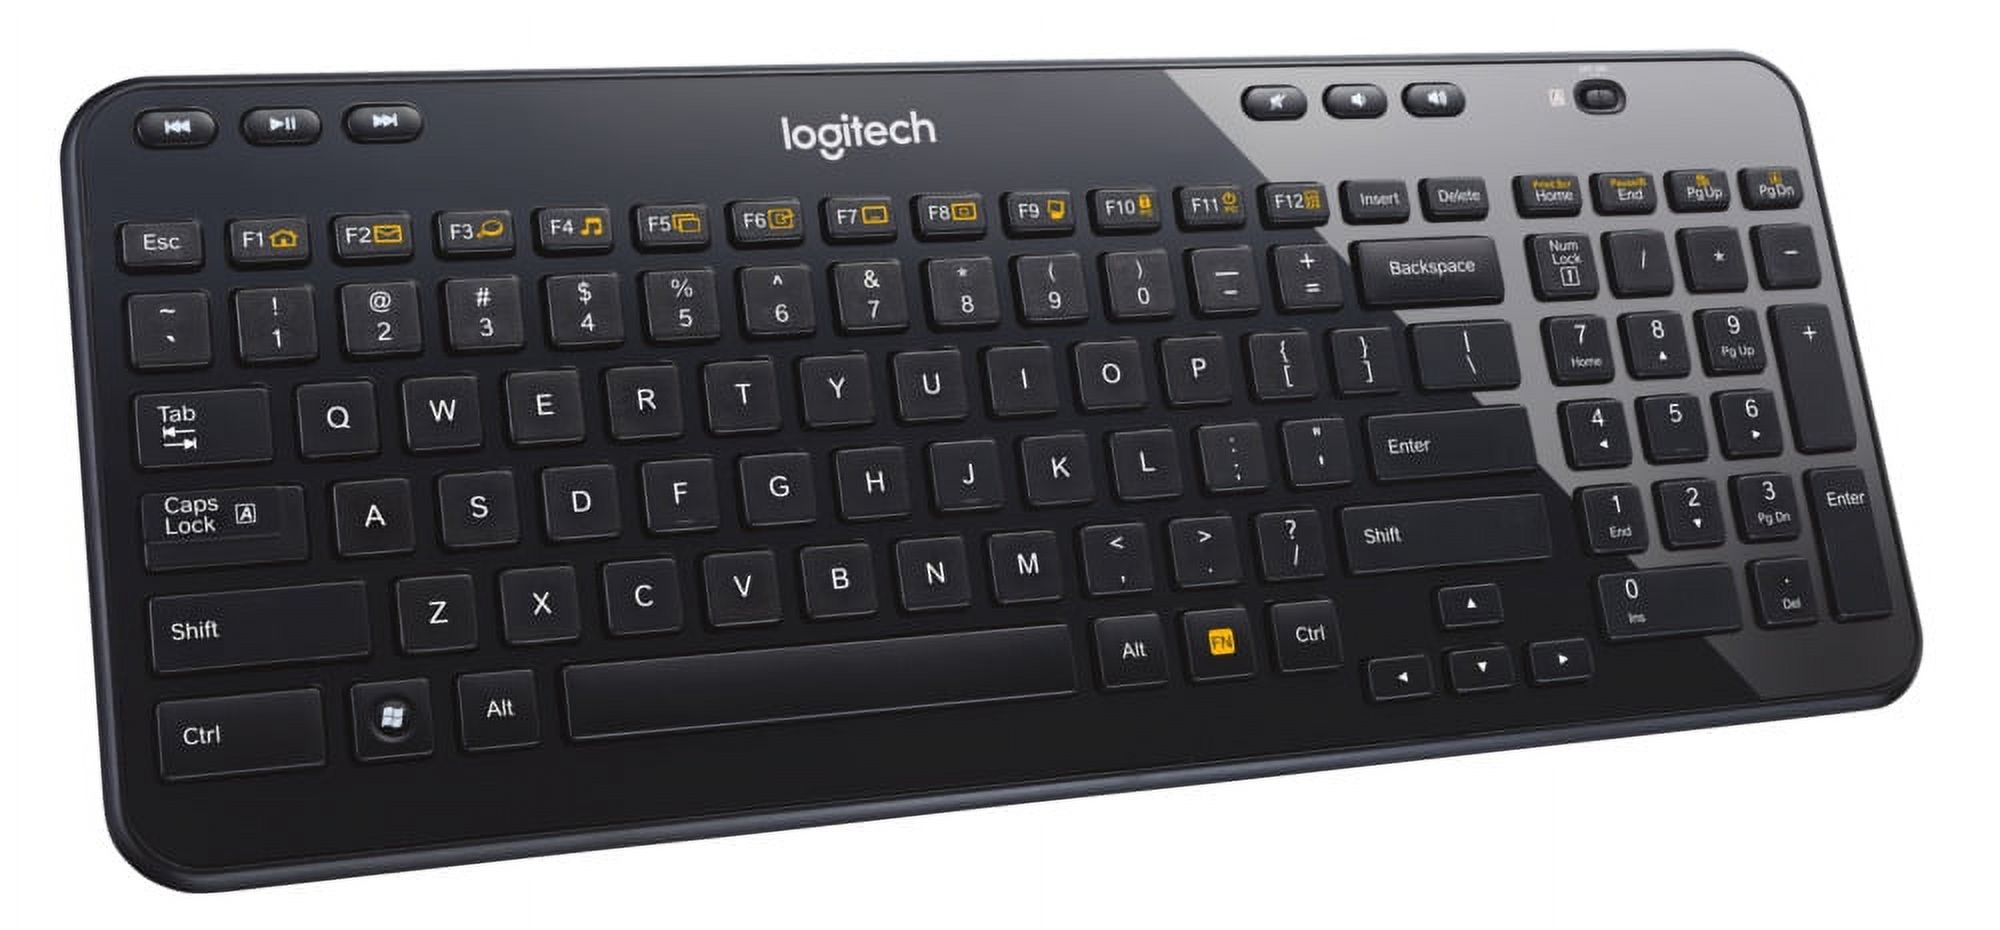 Logitech K360 Wireless Keyboard for Windows, Black - image 3 of 6